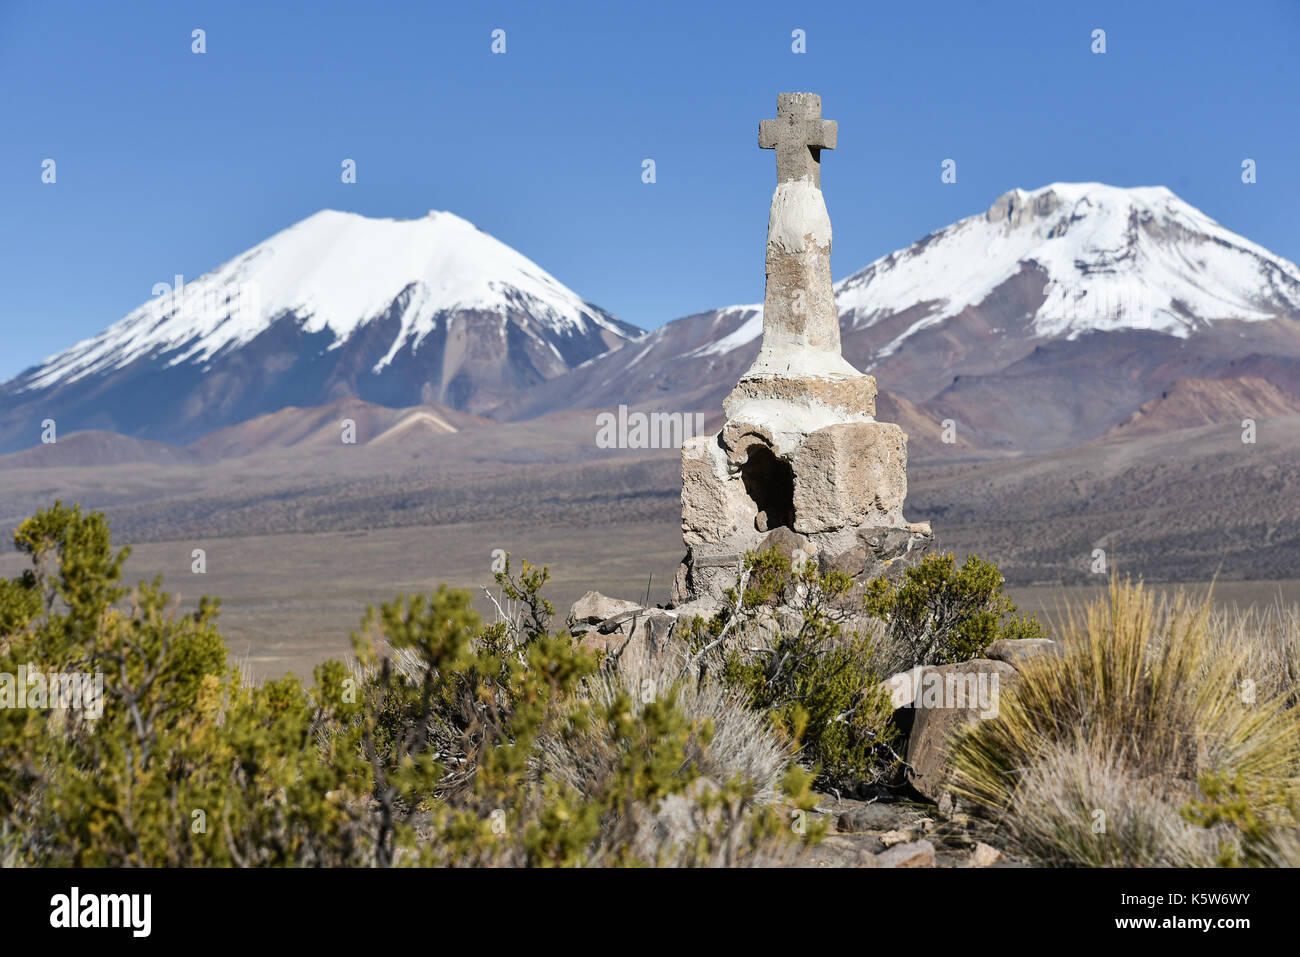 La neige a couvert les volcans Parinacota et Pomerape avec petite chapelle, le parc national de Sajama bolivien, à la frontière de la Bolivie Chili Banque D'Images